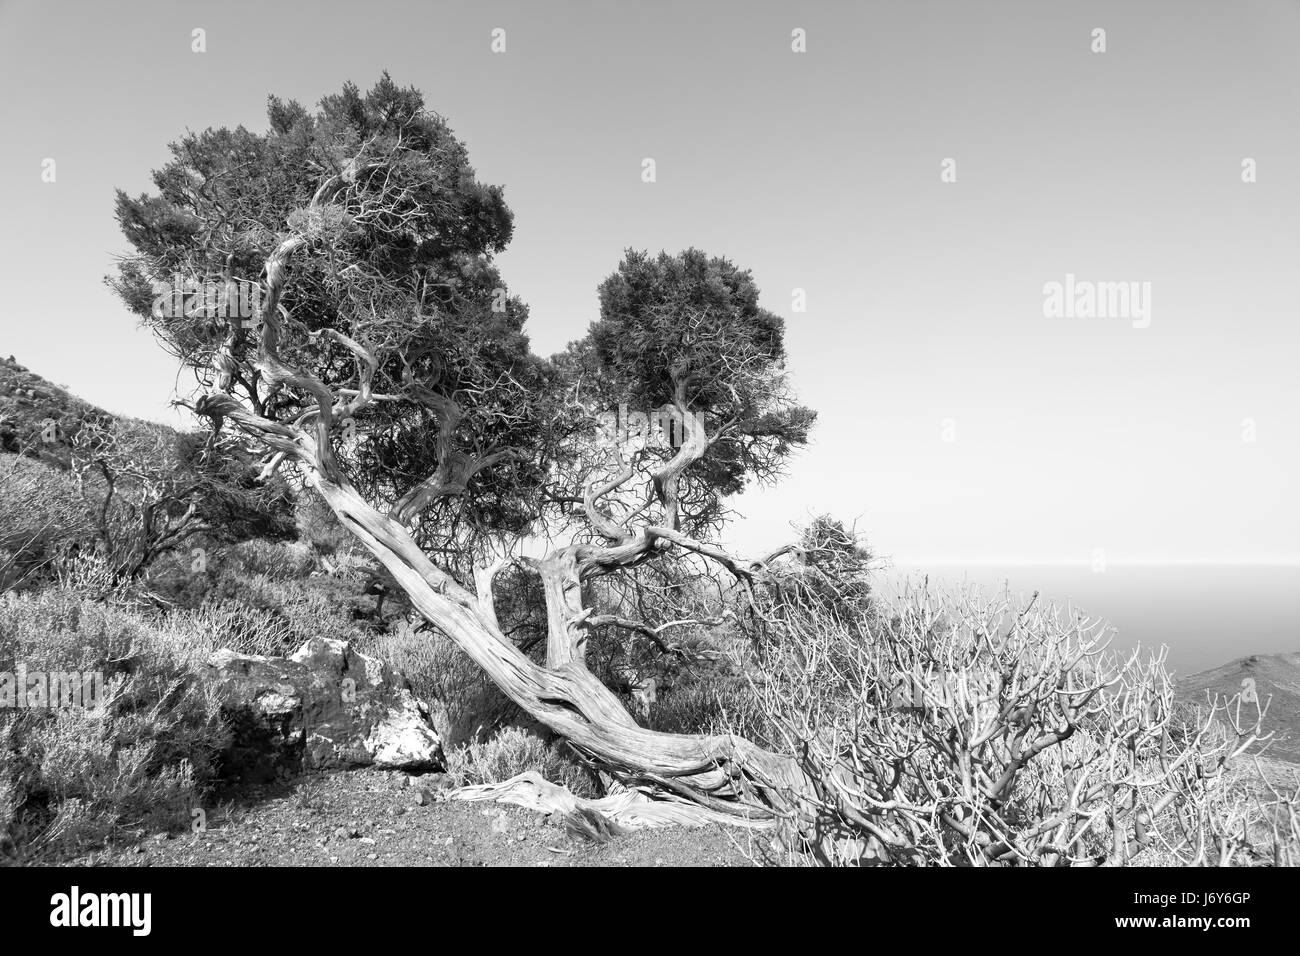 Doblado por el fuerte viento árbol en tierras altas de la isla de El Hierro, Islas Canarias. Imagen en blanco y negro Foto de stock